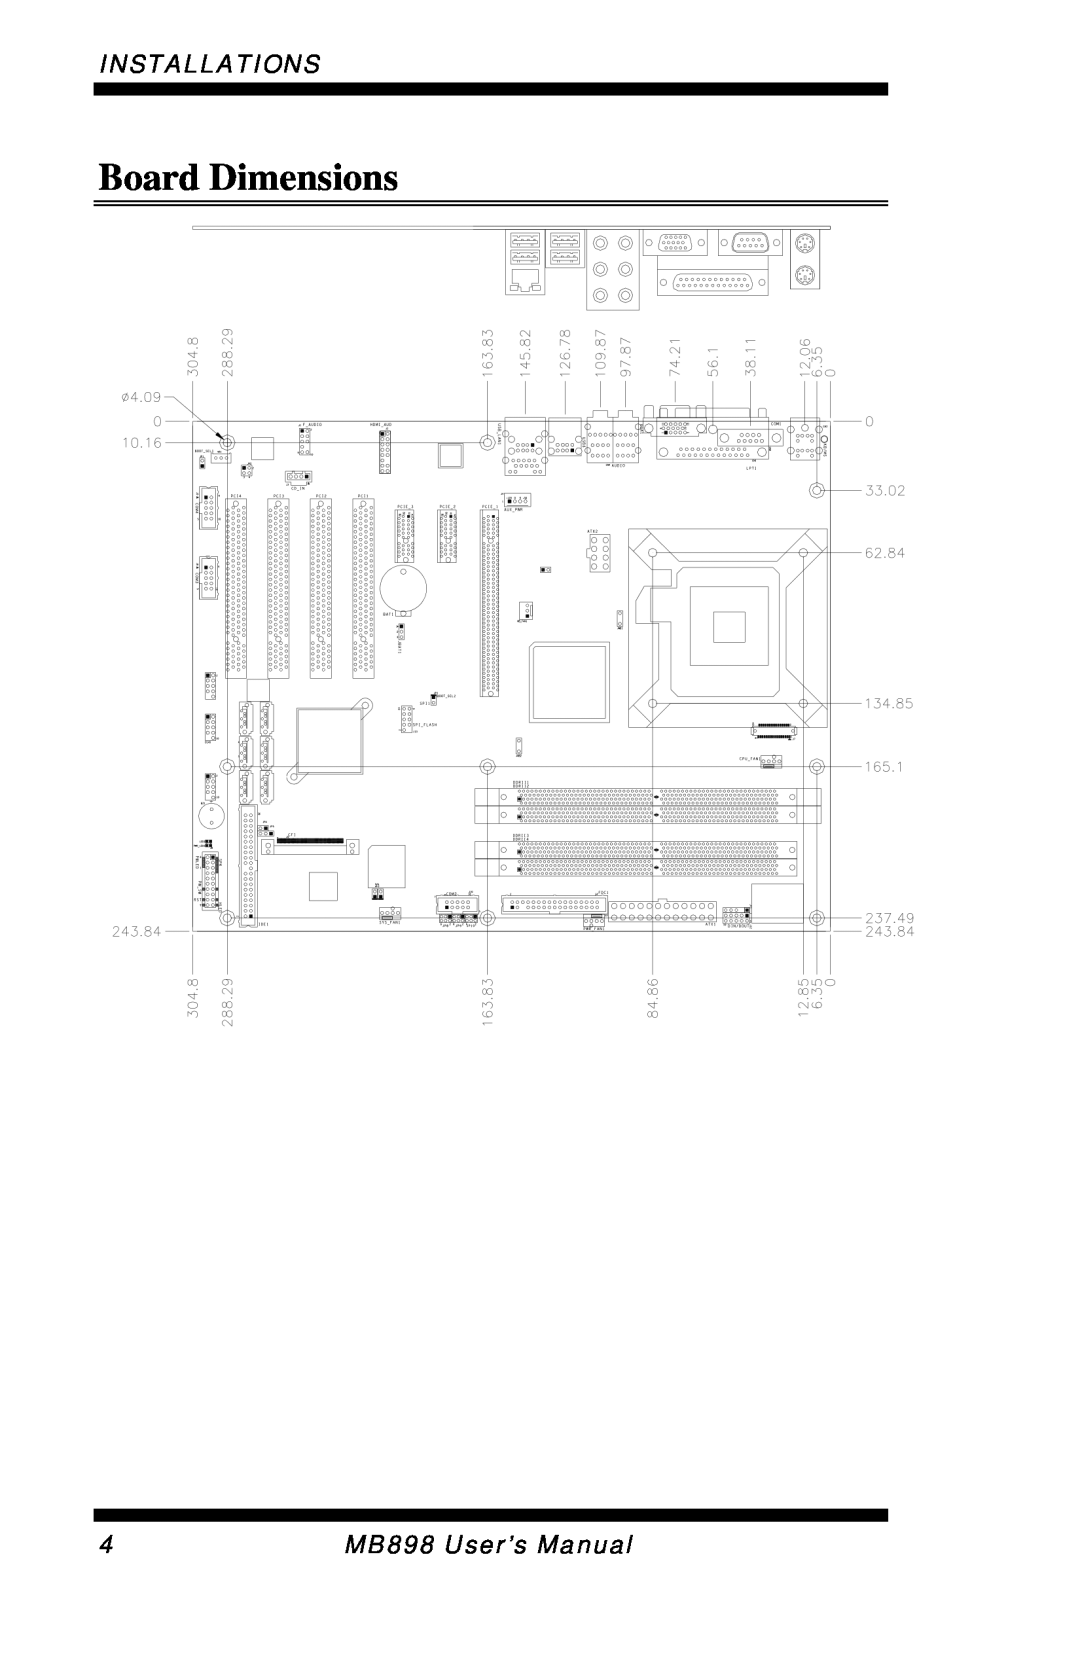 Intel MB898F, MB898RF user manual Board Dimensions, Installations, MB898 User’s Manual 